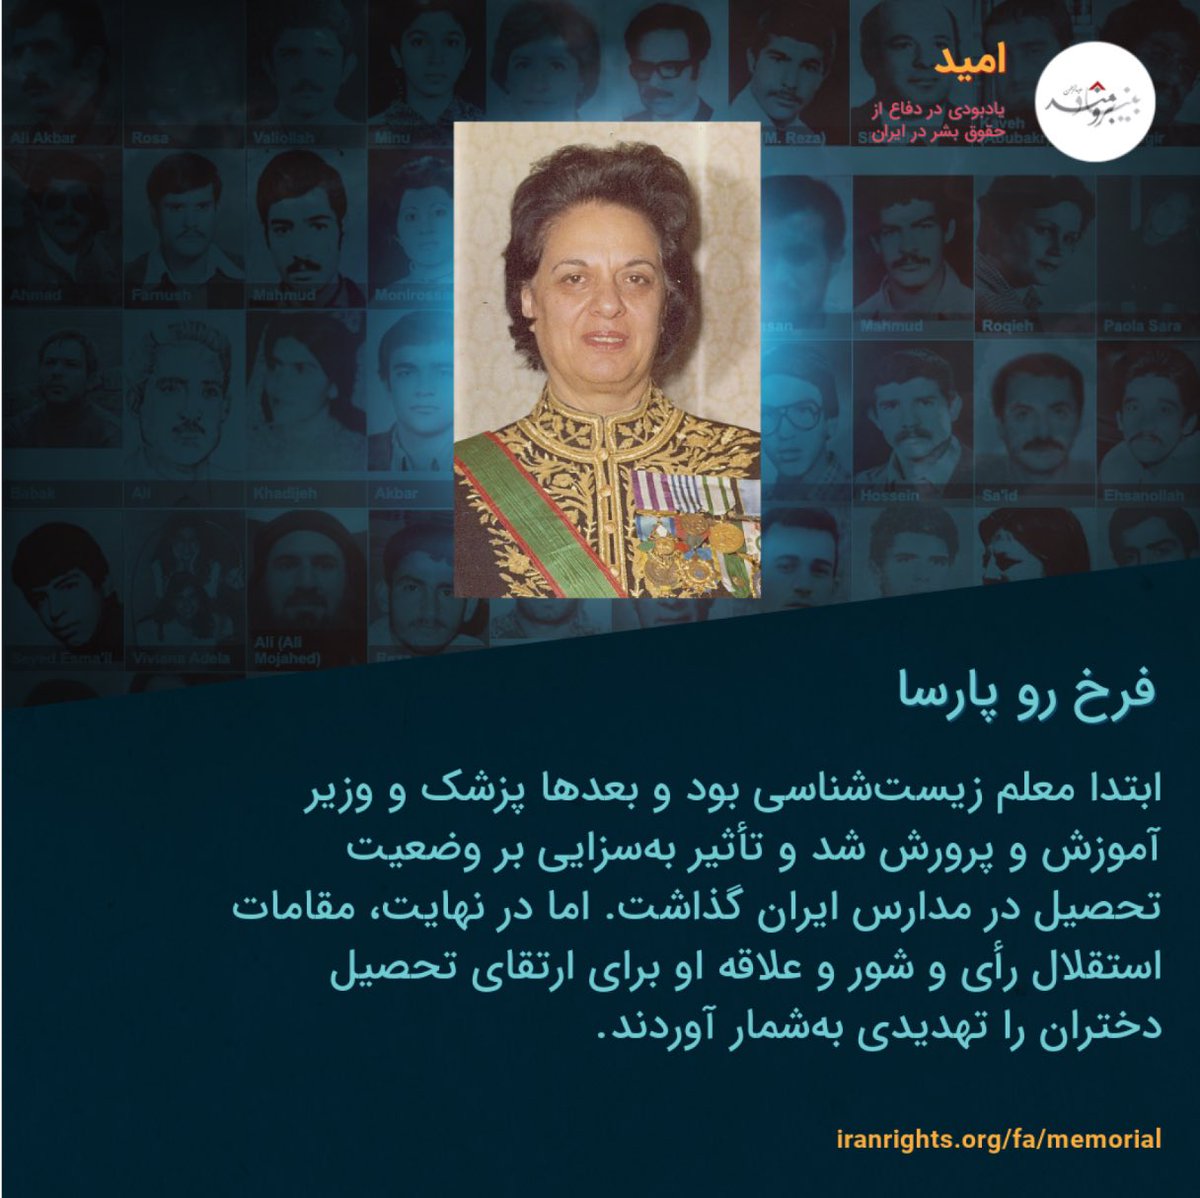 در چنین روزی از سال ۱۳۶۰، #فرخ‌رو_پارسا نخستین وزیر زن در ایران پیش از انقلاب و از پیشگامان حقوق زنان در ایران، توسط جوخه‌های آتش جمهوری‌اسلامی تیرباران شد. بیشتر از او بخوانید در #یادبودامید: iranrights.org/fa/memorial/st…